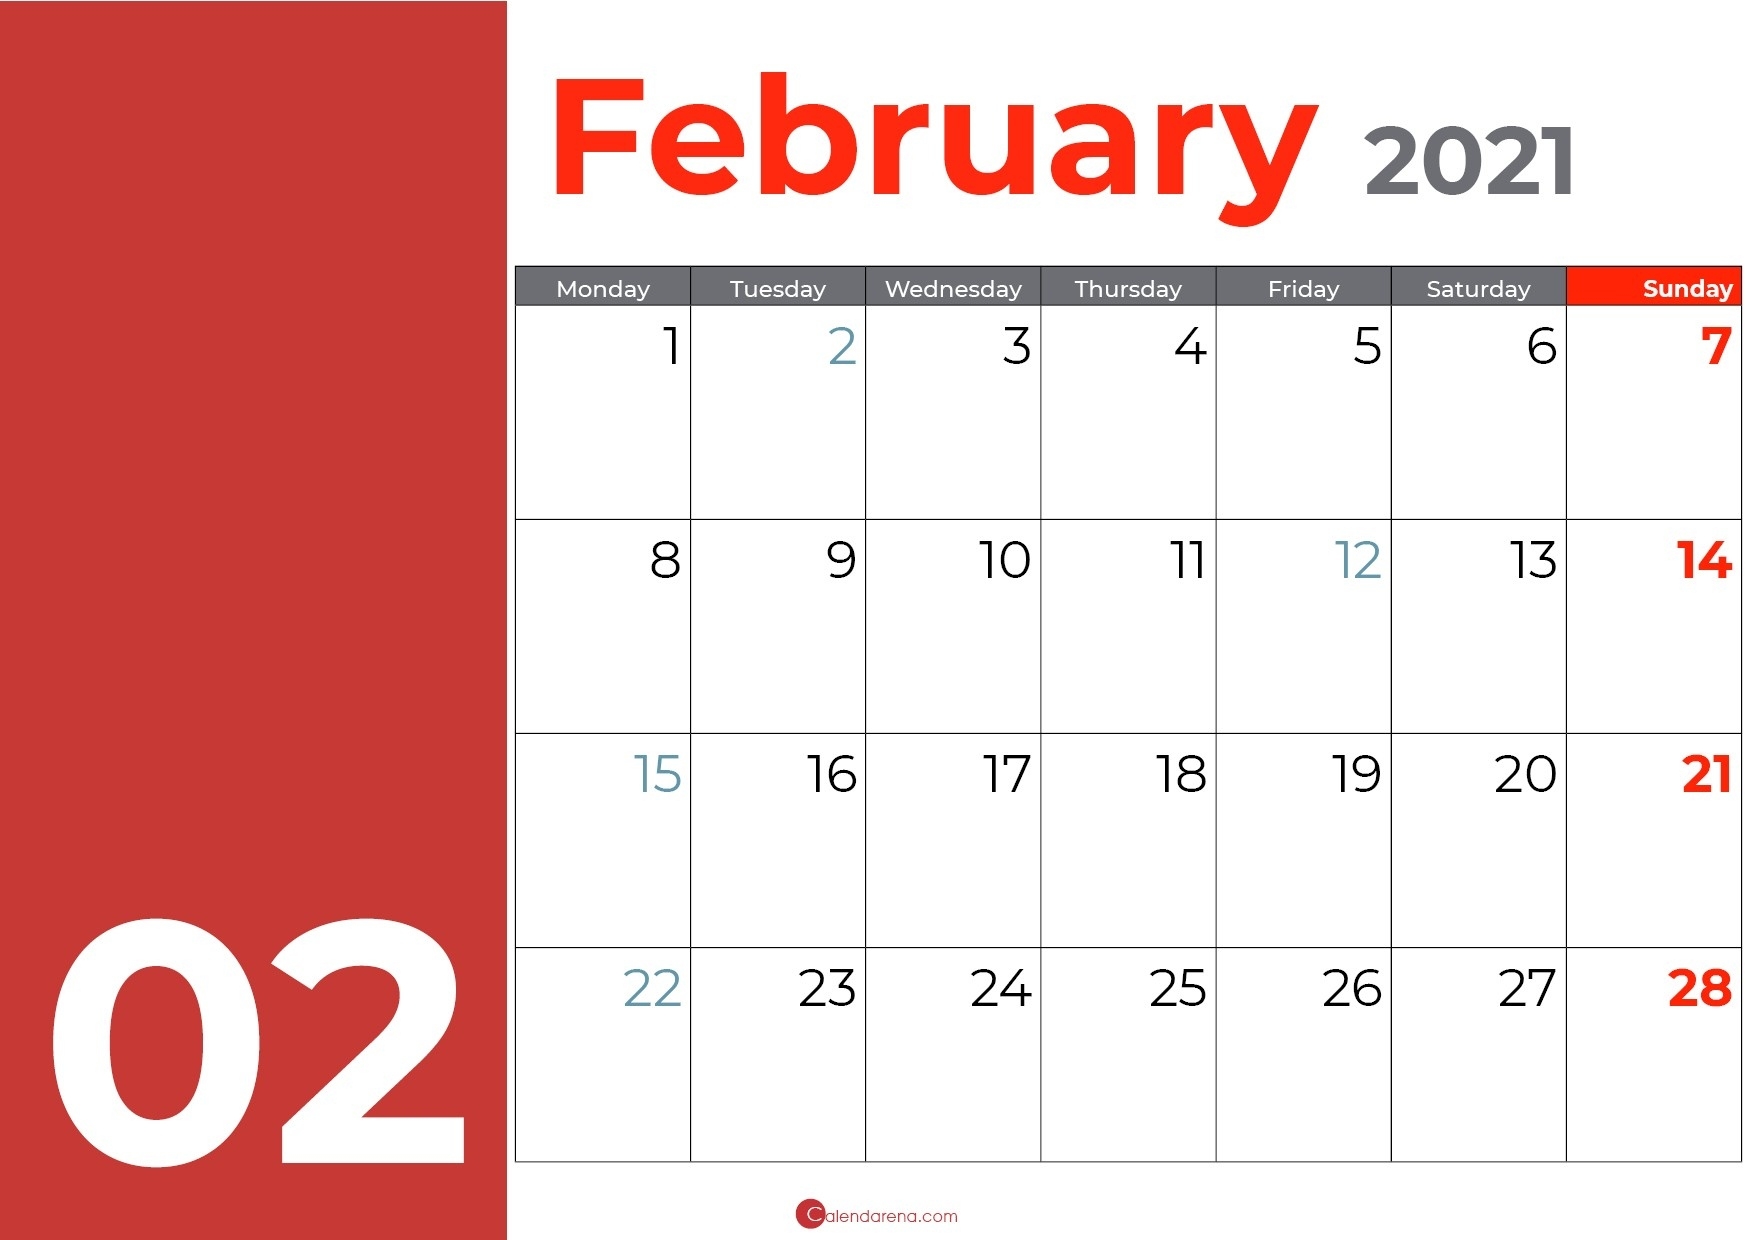 Best Free ?? Blank February Calendar 2021 - Calendarena Show Me A Calendar For December 2021